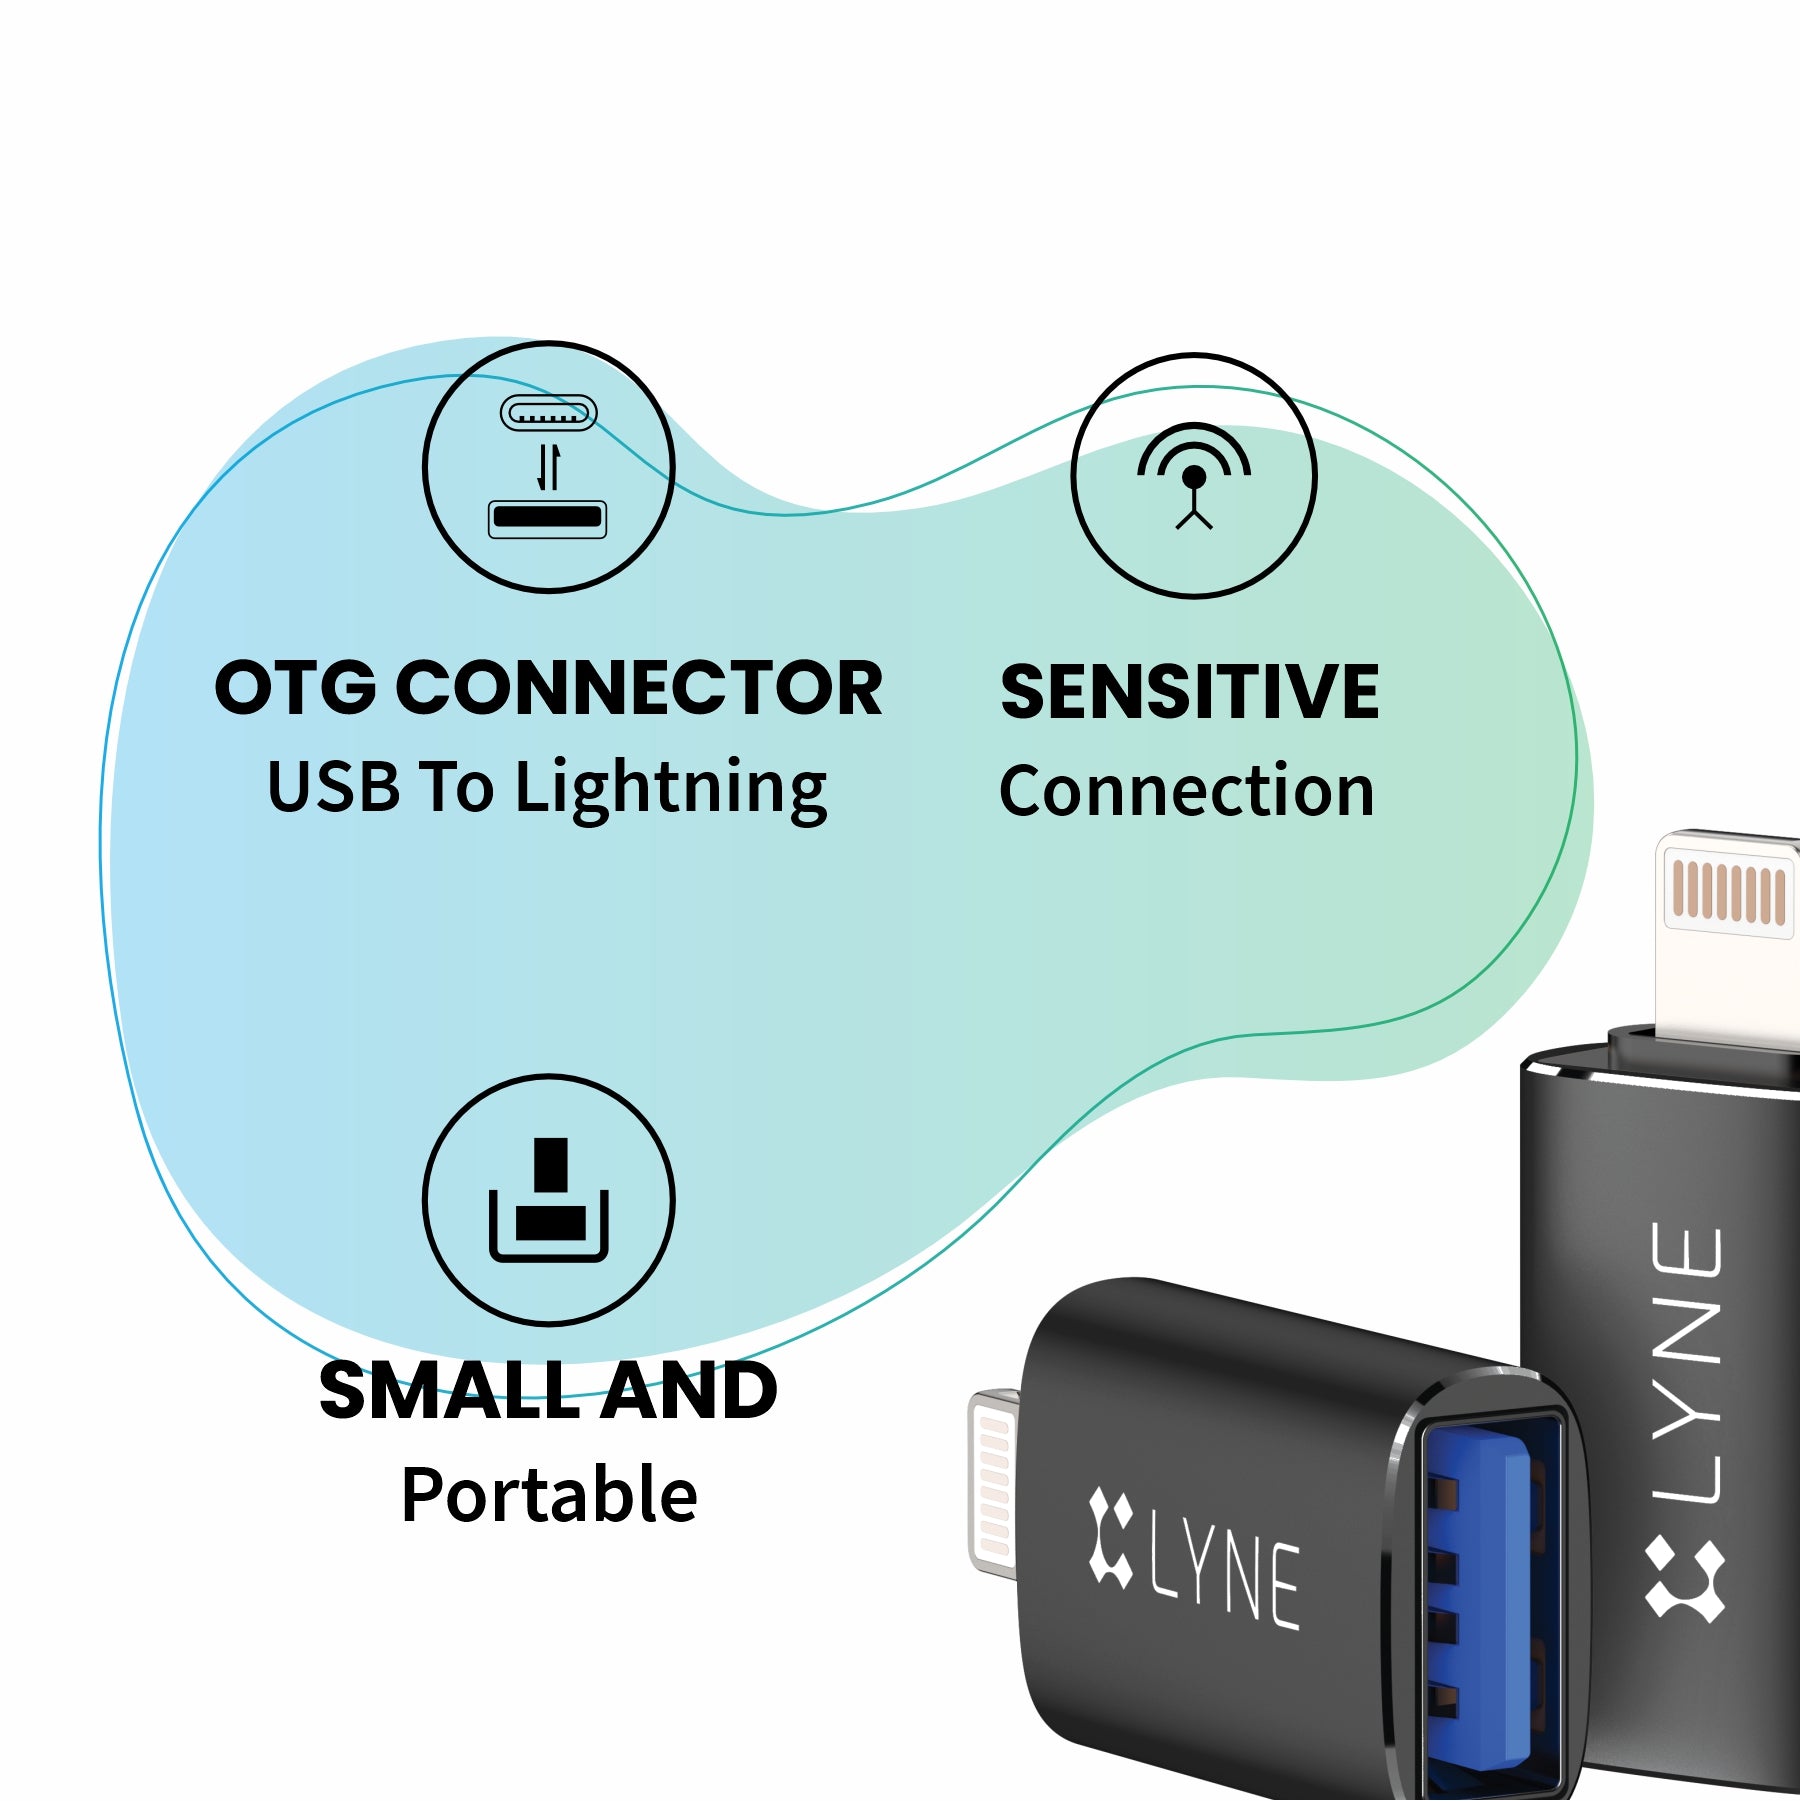  LYNE Flame 4 USB to Ligntning OTG Connector